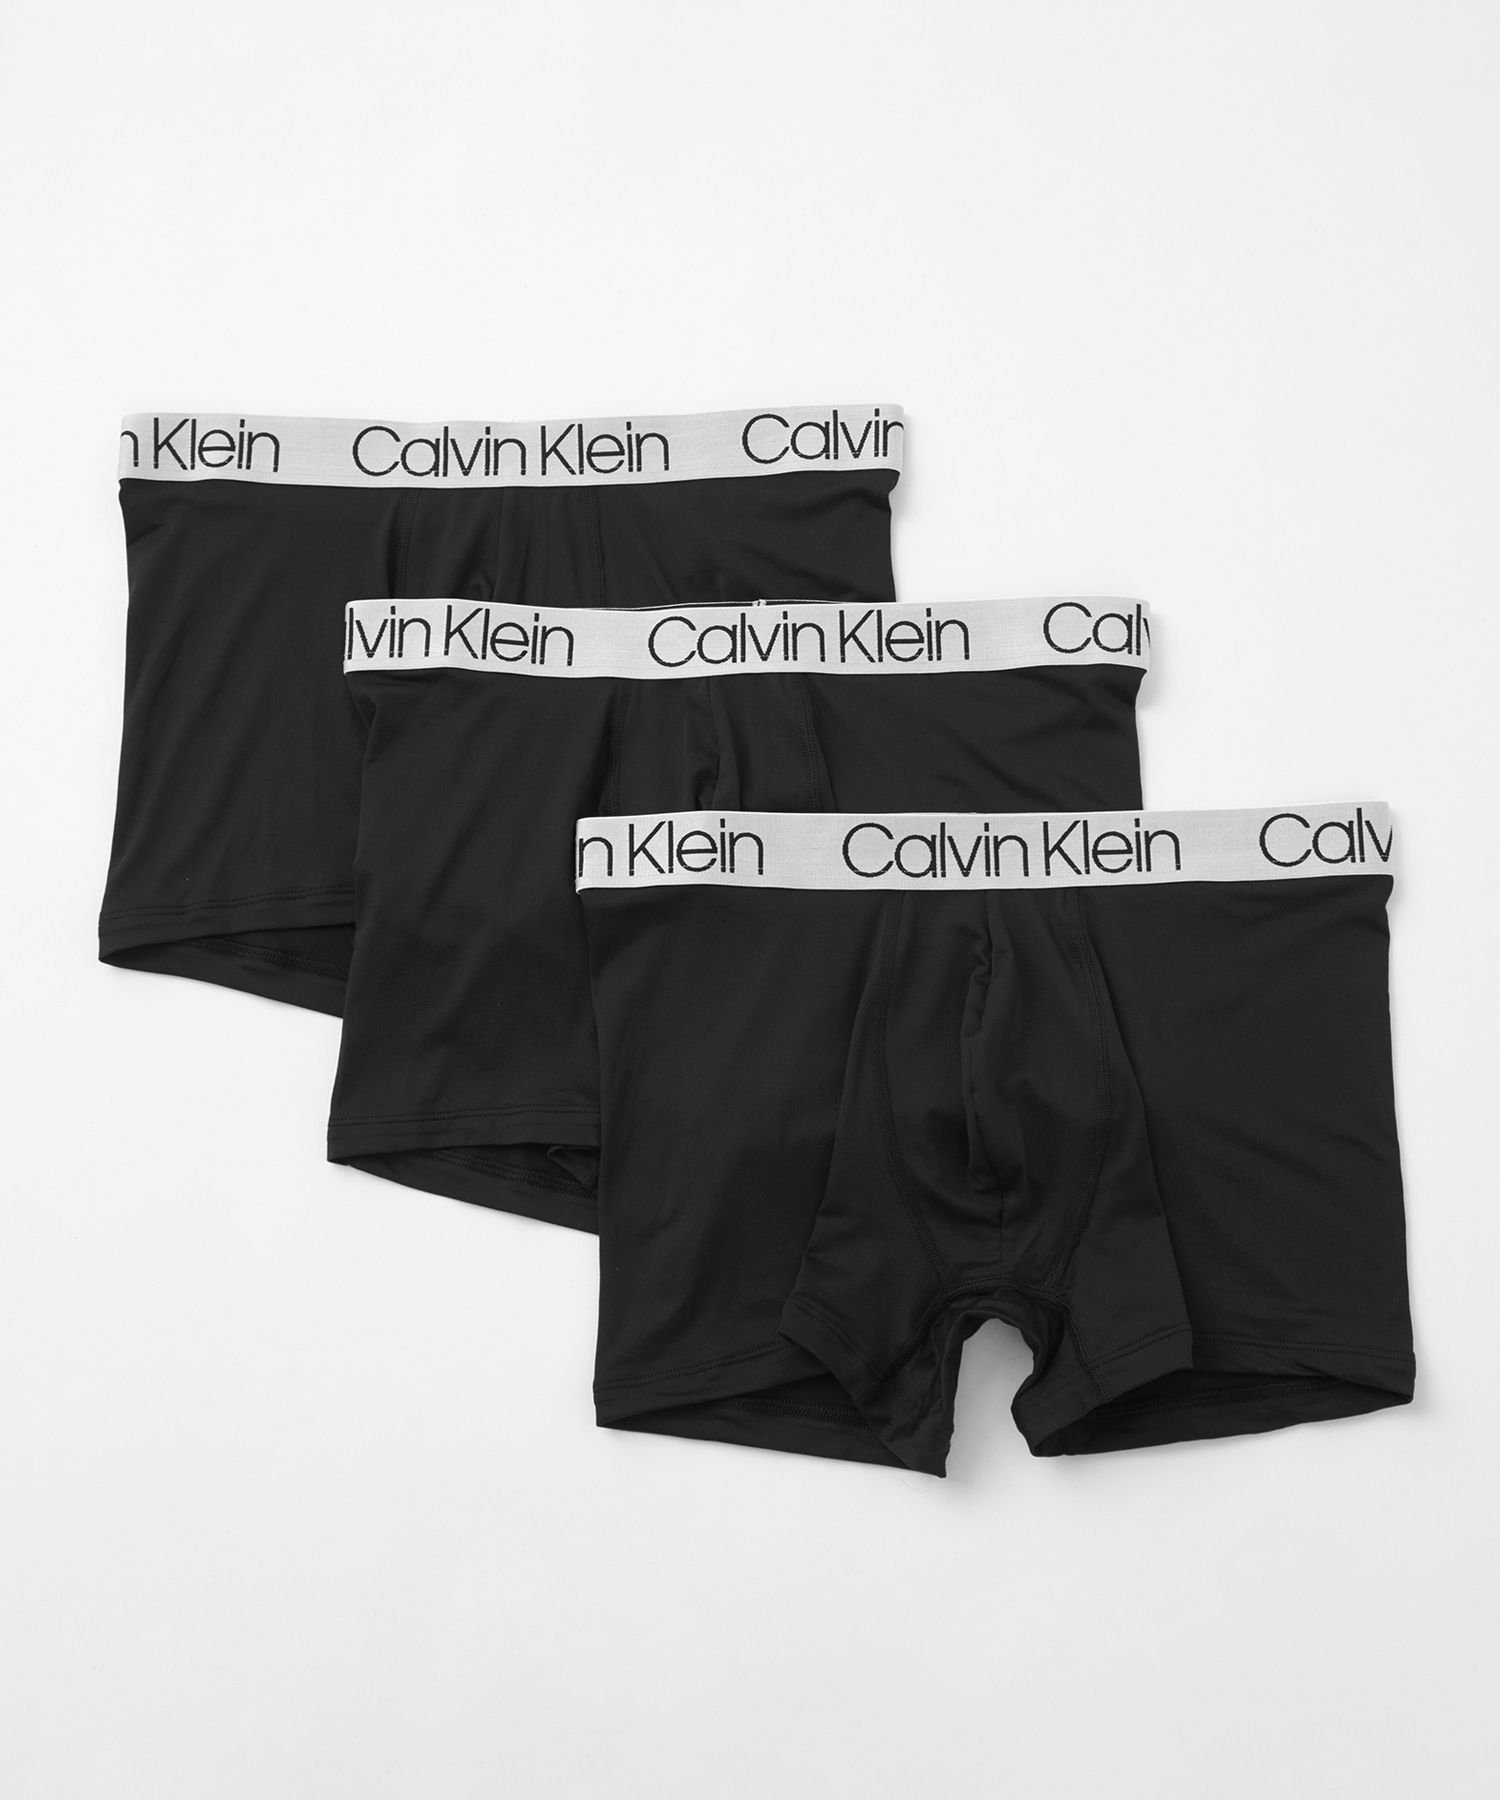 Calvin Klein Underwear (M)【公式ショップ】 カルバンクライン クロマティック ボクサーパンツ 3枚パック Calvin Klein Underwear NP2213O カルバン・クライン インナー・ルームウェア ボクサーパンツ・トランクス ブラック【送料無料】 1